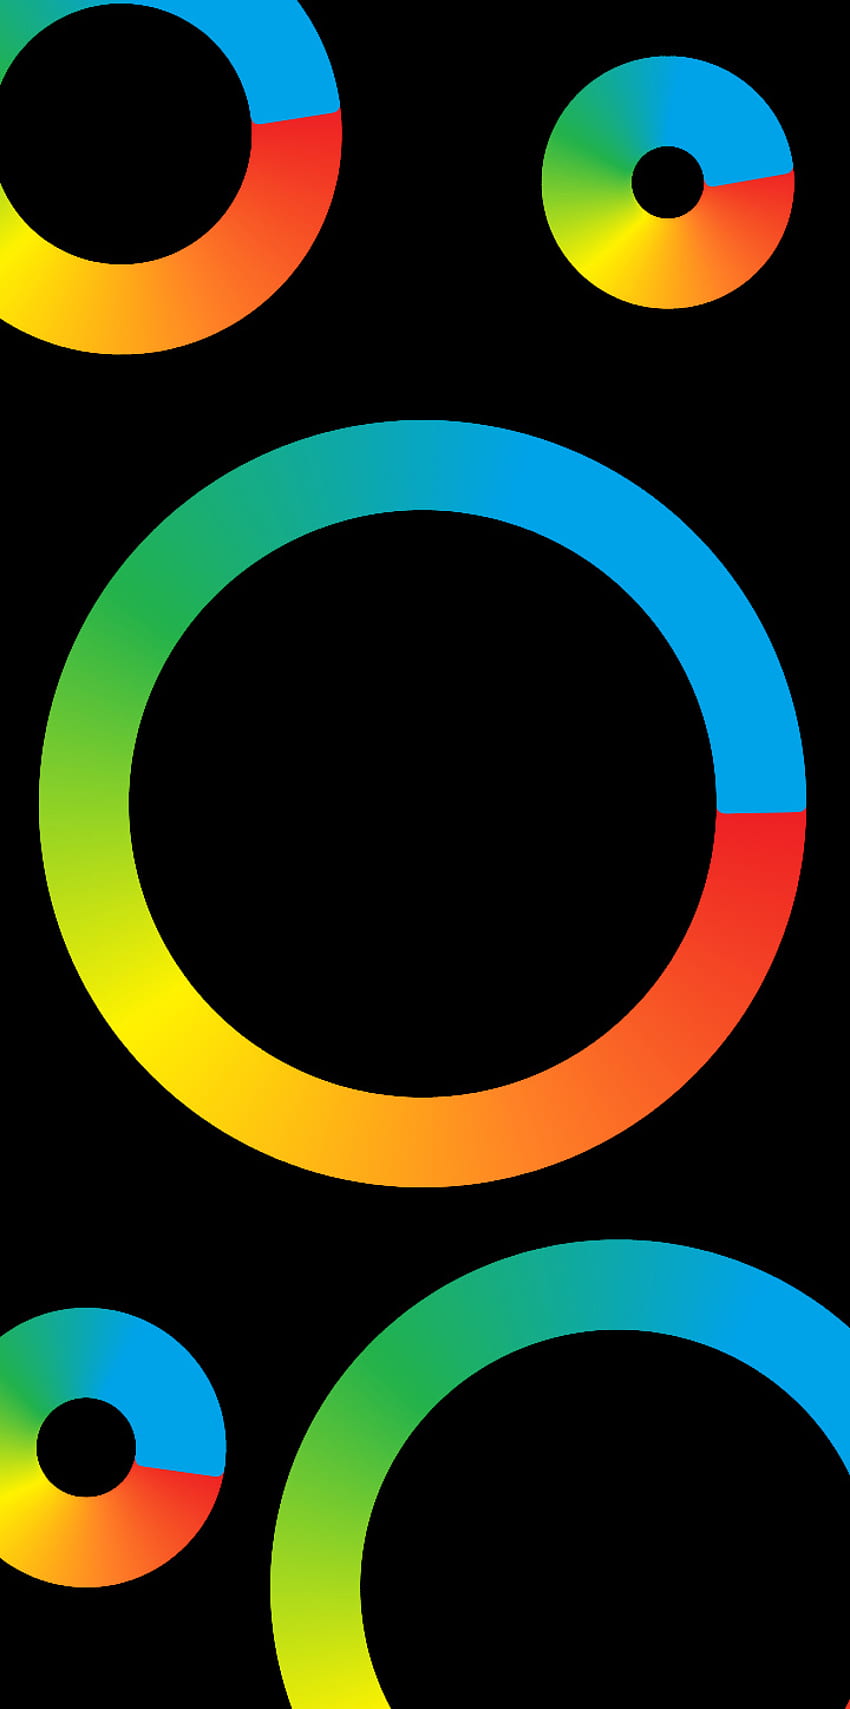 ピクセル スタイルのデザイン、虹、シンボル、カラフルさ、黒、暗い、円、色 HD電話の壁紙